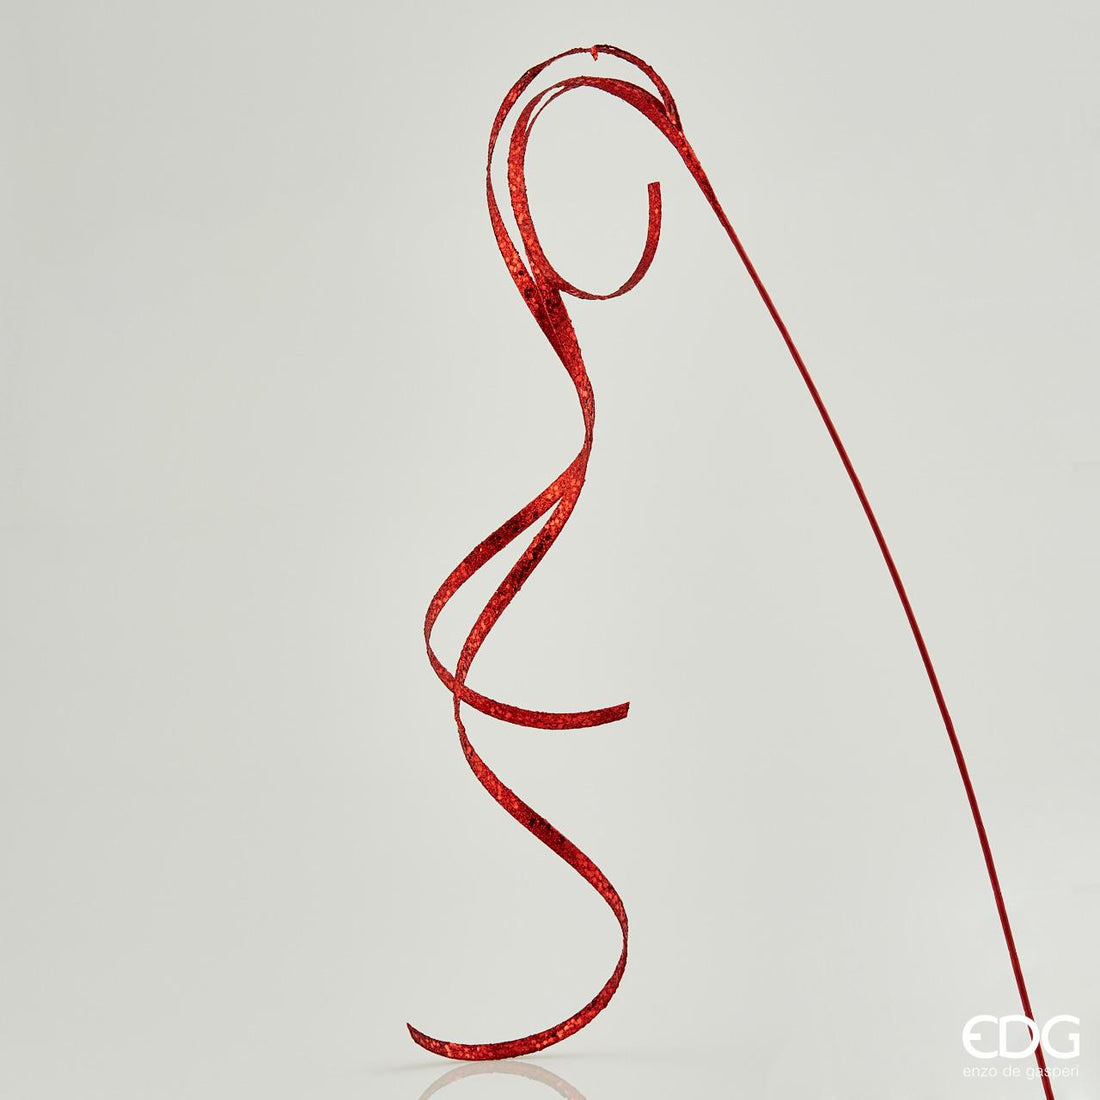 EDG - Filante Decorazione Natalizia Addobbi Natale Rosso 155cm